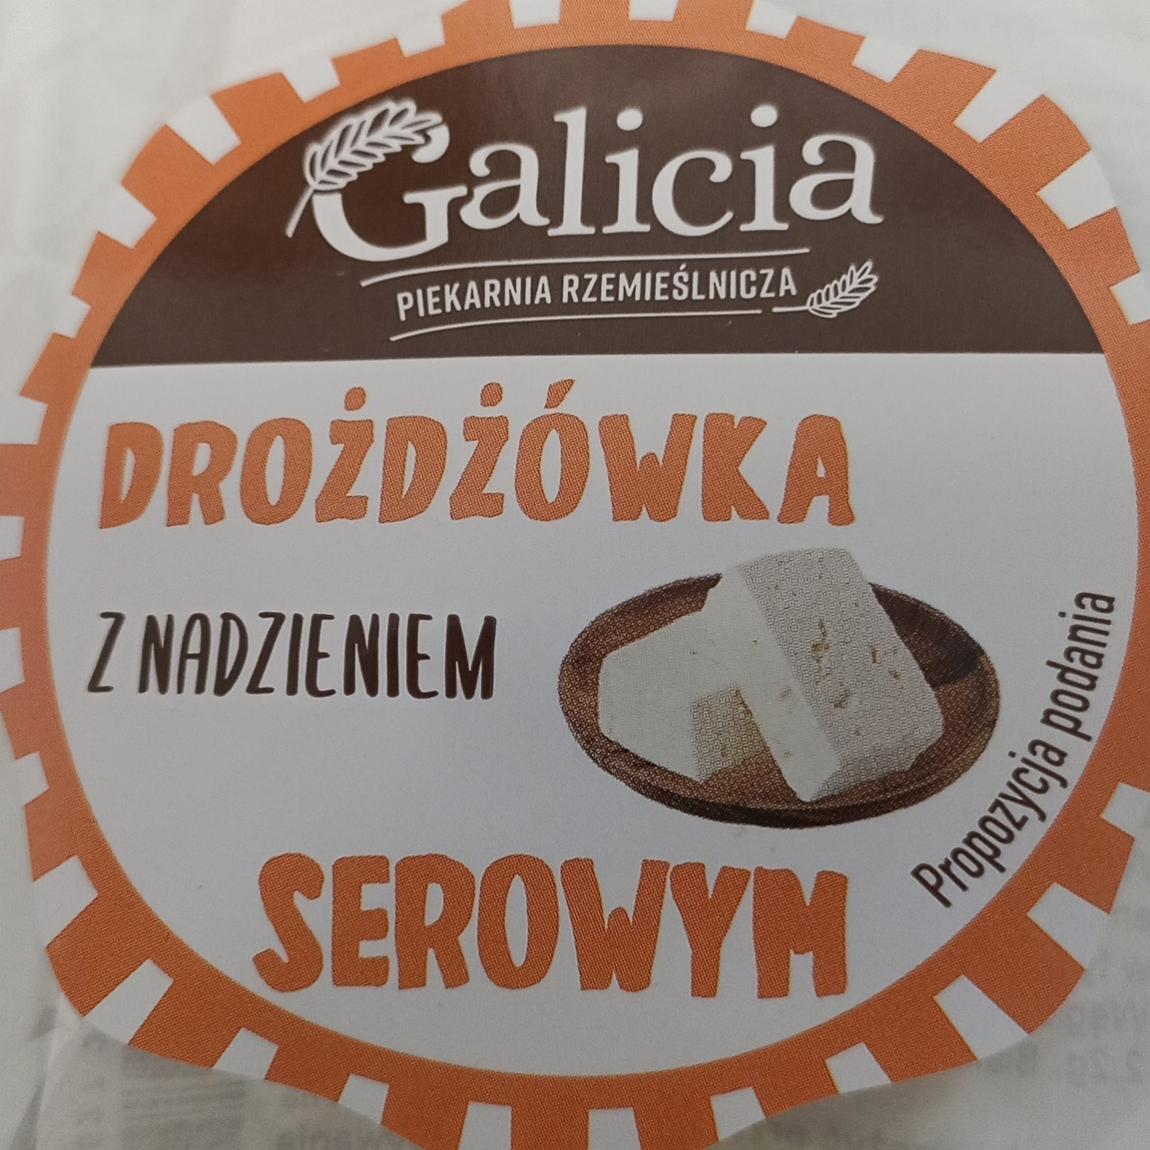 Zdjęcia - Drożdżówka z nadzieniem serowym Galicia